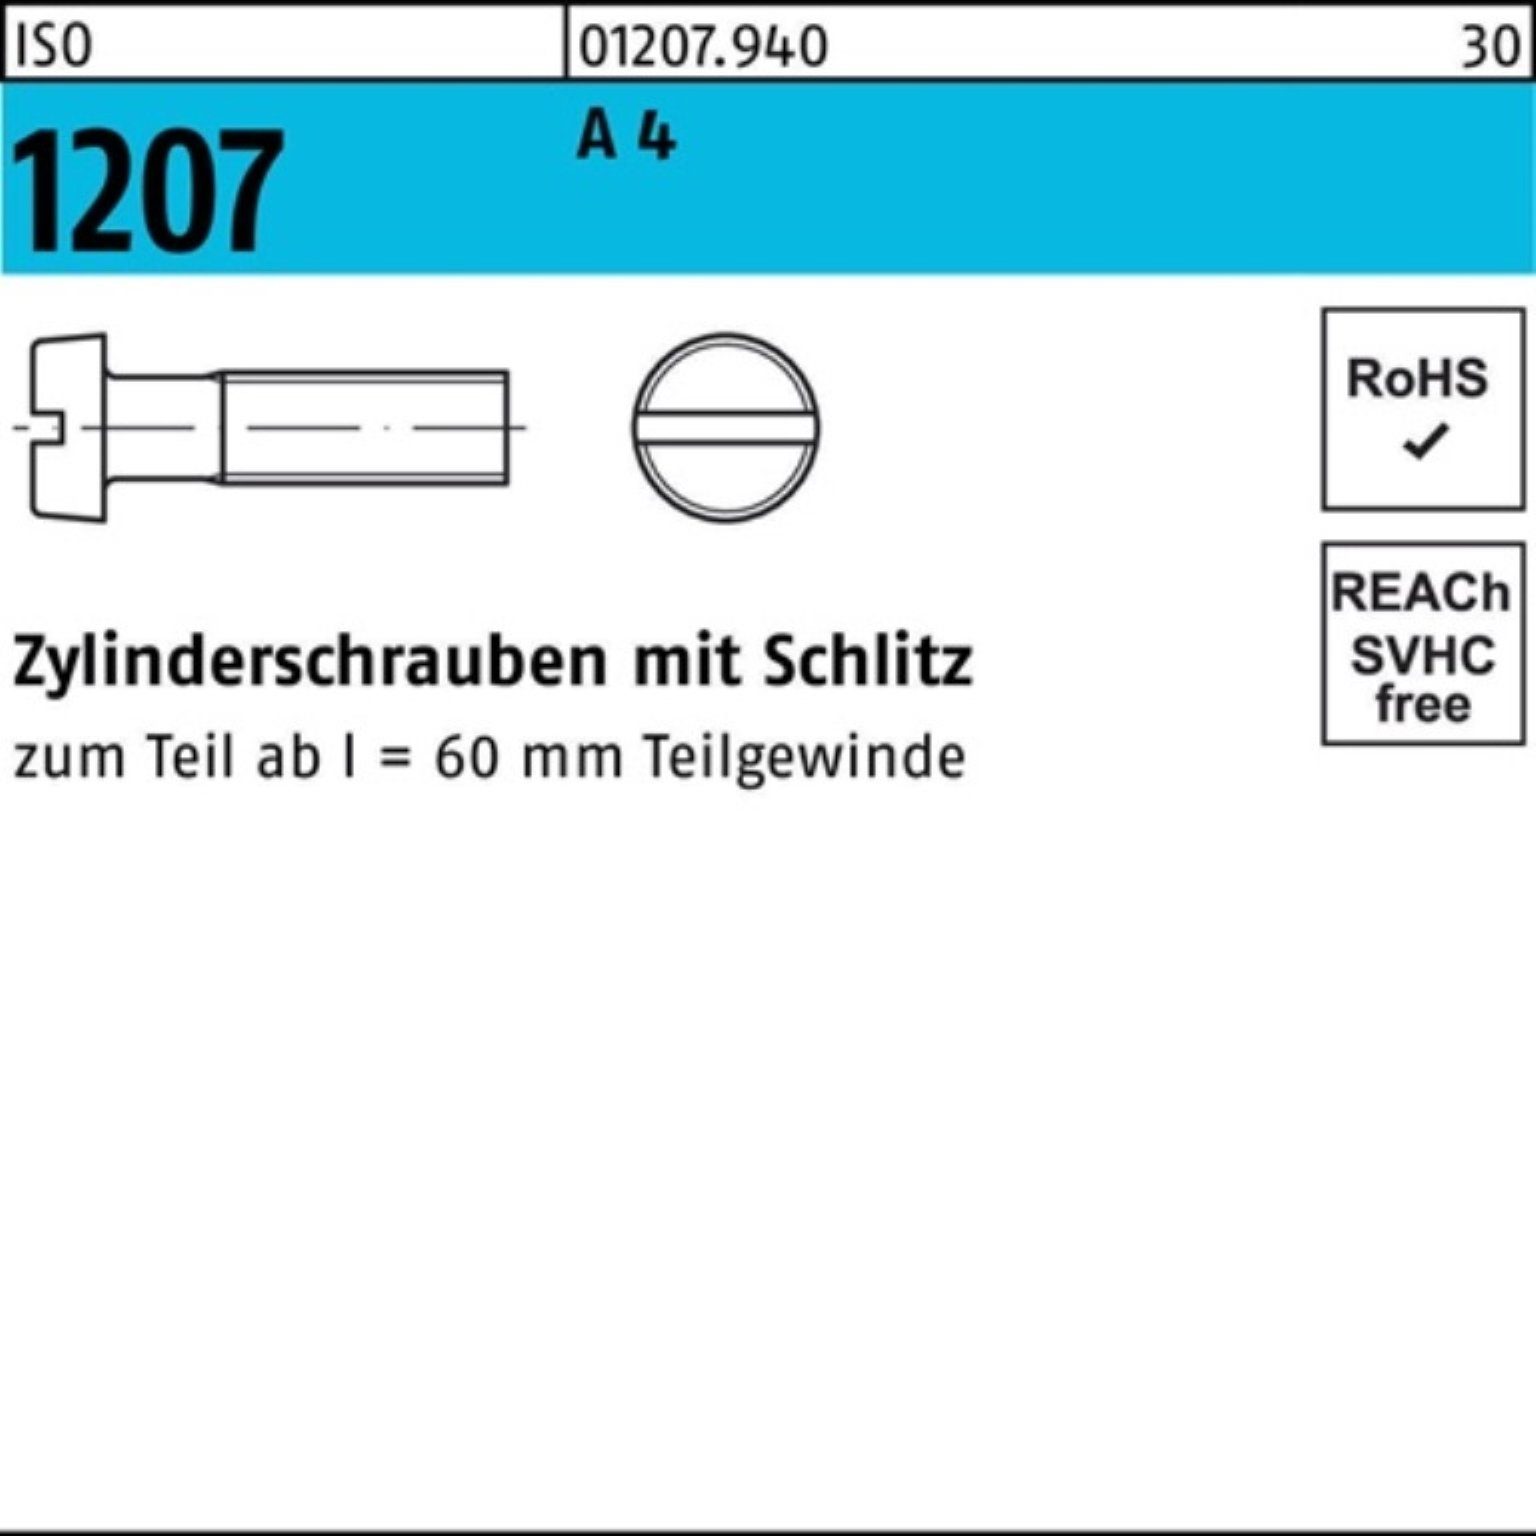 IS Zylinderschraube Schlitz Pack 1000 8 Reyher Zylinderschraube Stück M2x 1000er 1207 4 ISO A